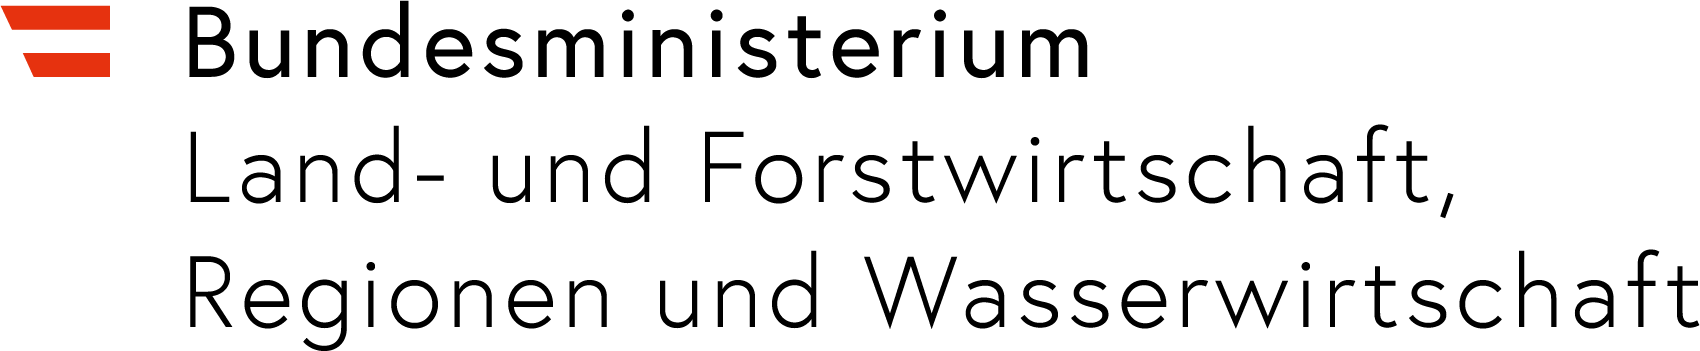 Logo des Bundesministeriums für Landwirtschaft, Regionen und Tourismus